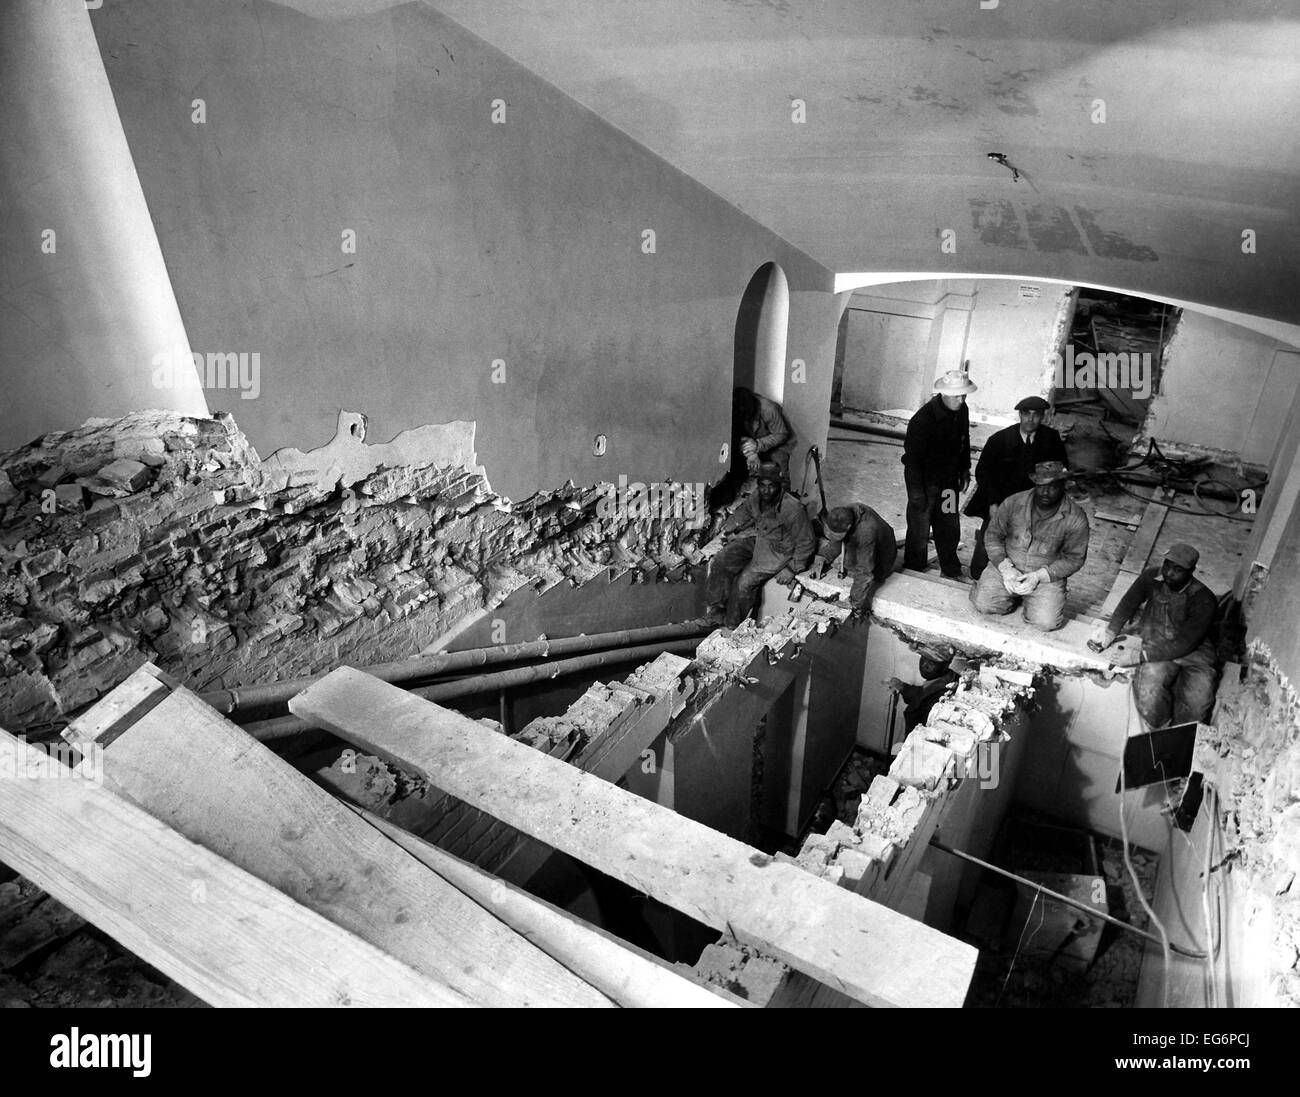 Renovierung des weißen Hauses während der Truman-Administration. Arbeiter, Wiederaufbau der Haupttreppe. 23. Februar 1950. - Stockfoto